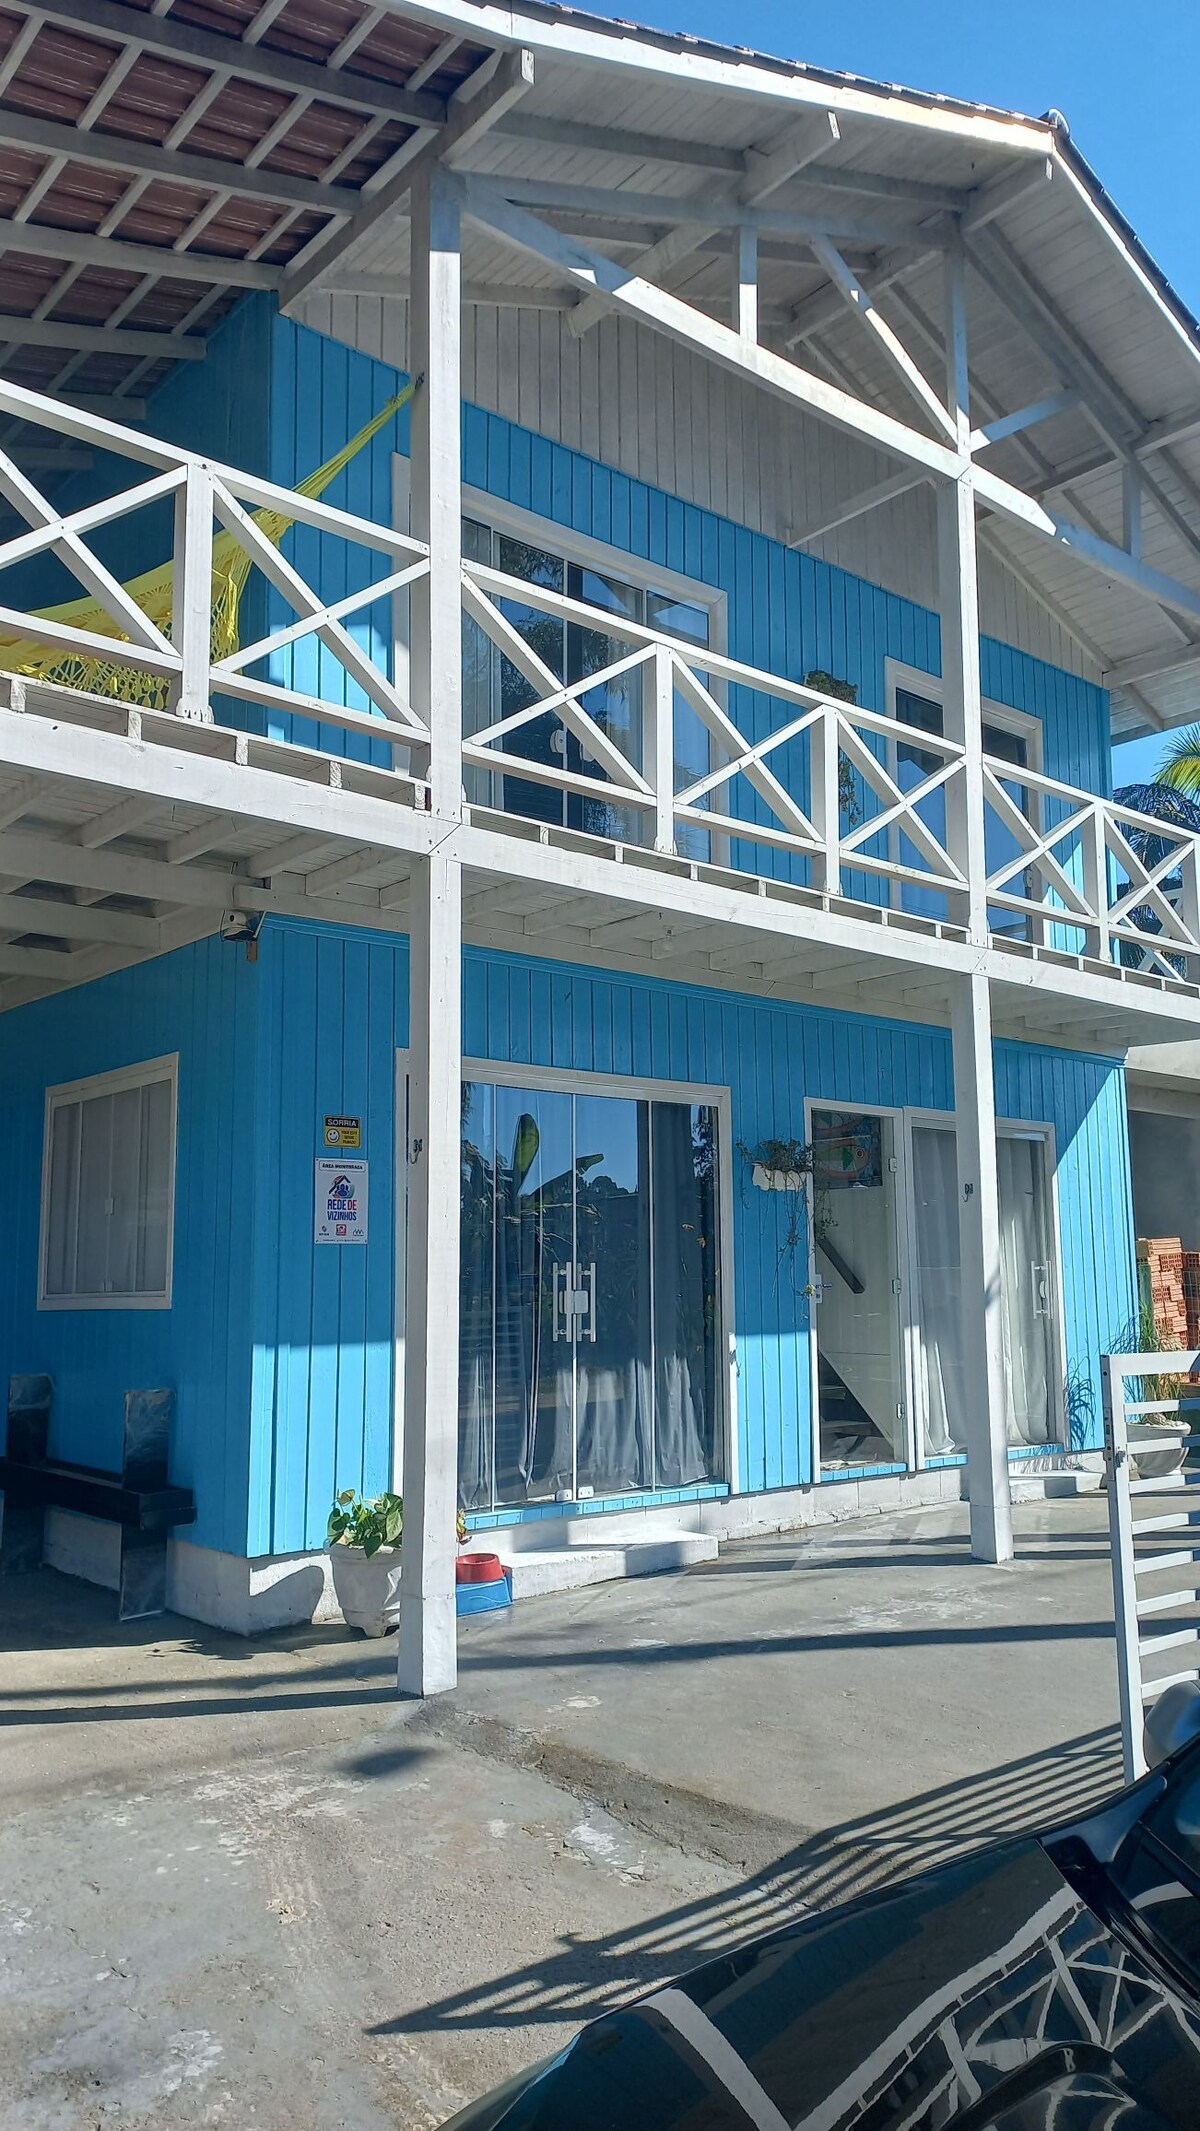 Casa Azul
Casa de Praia